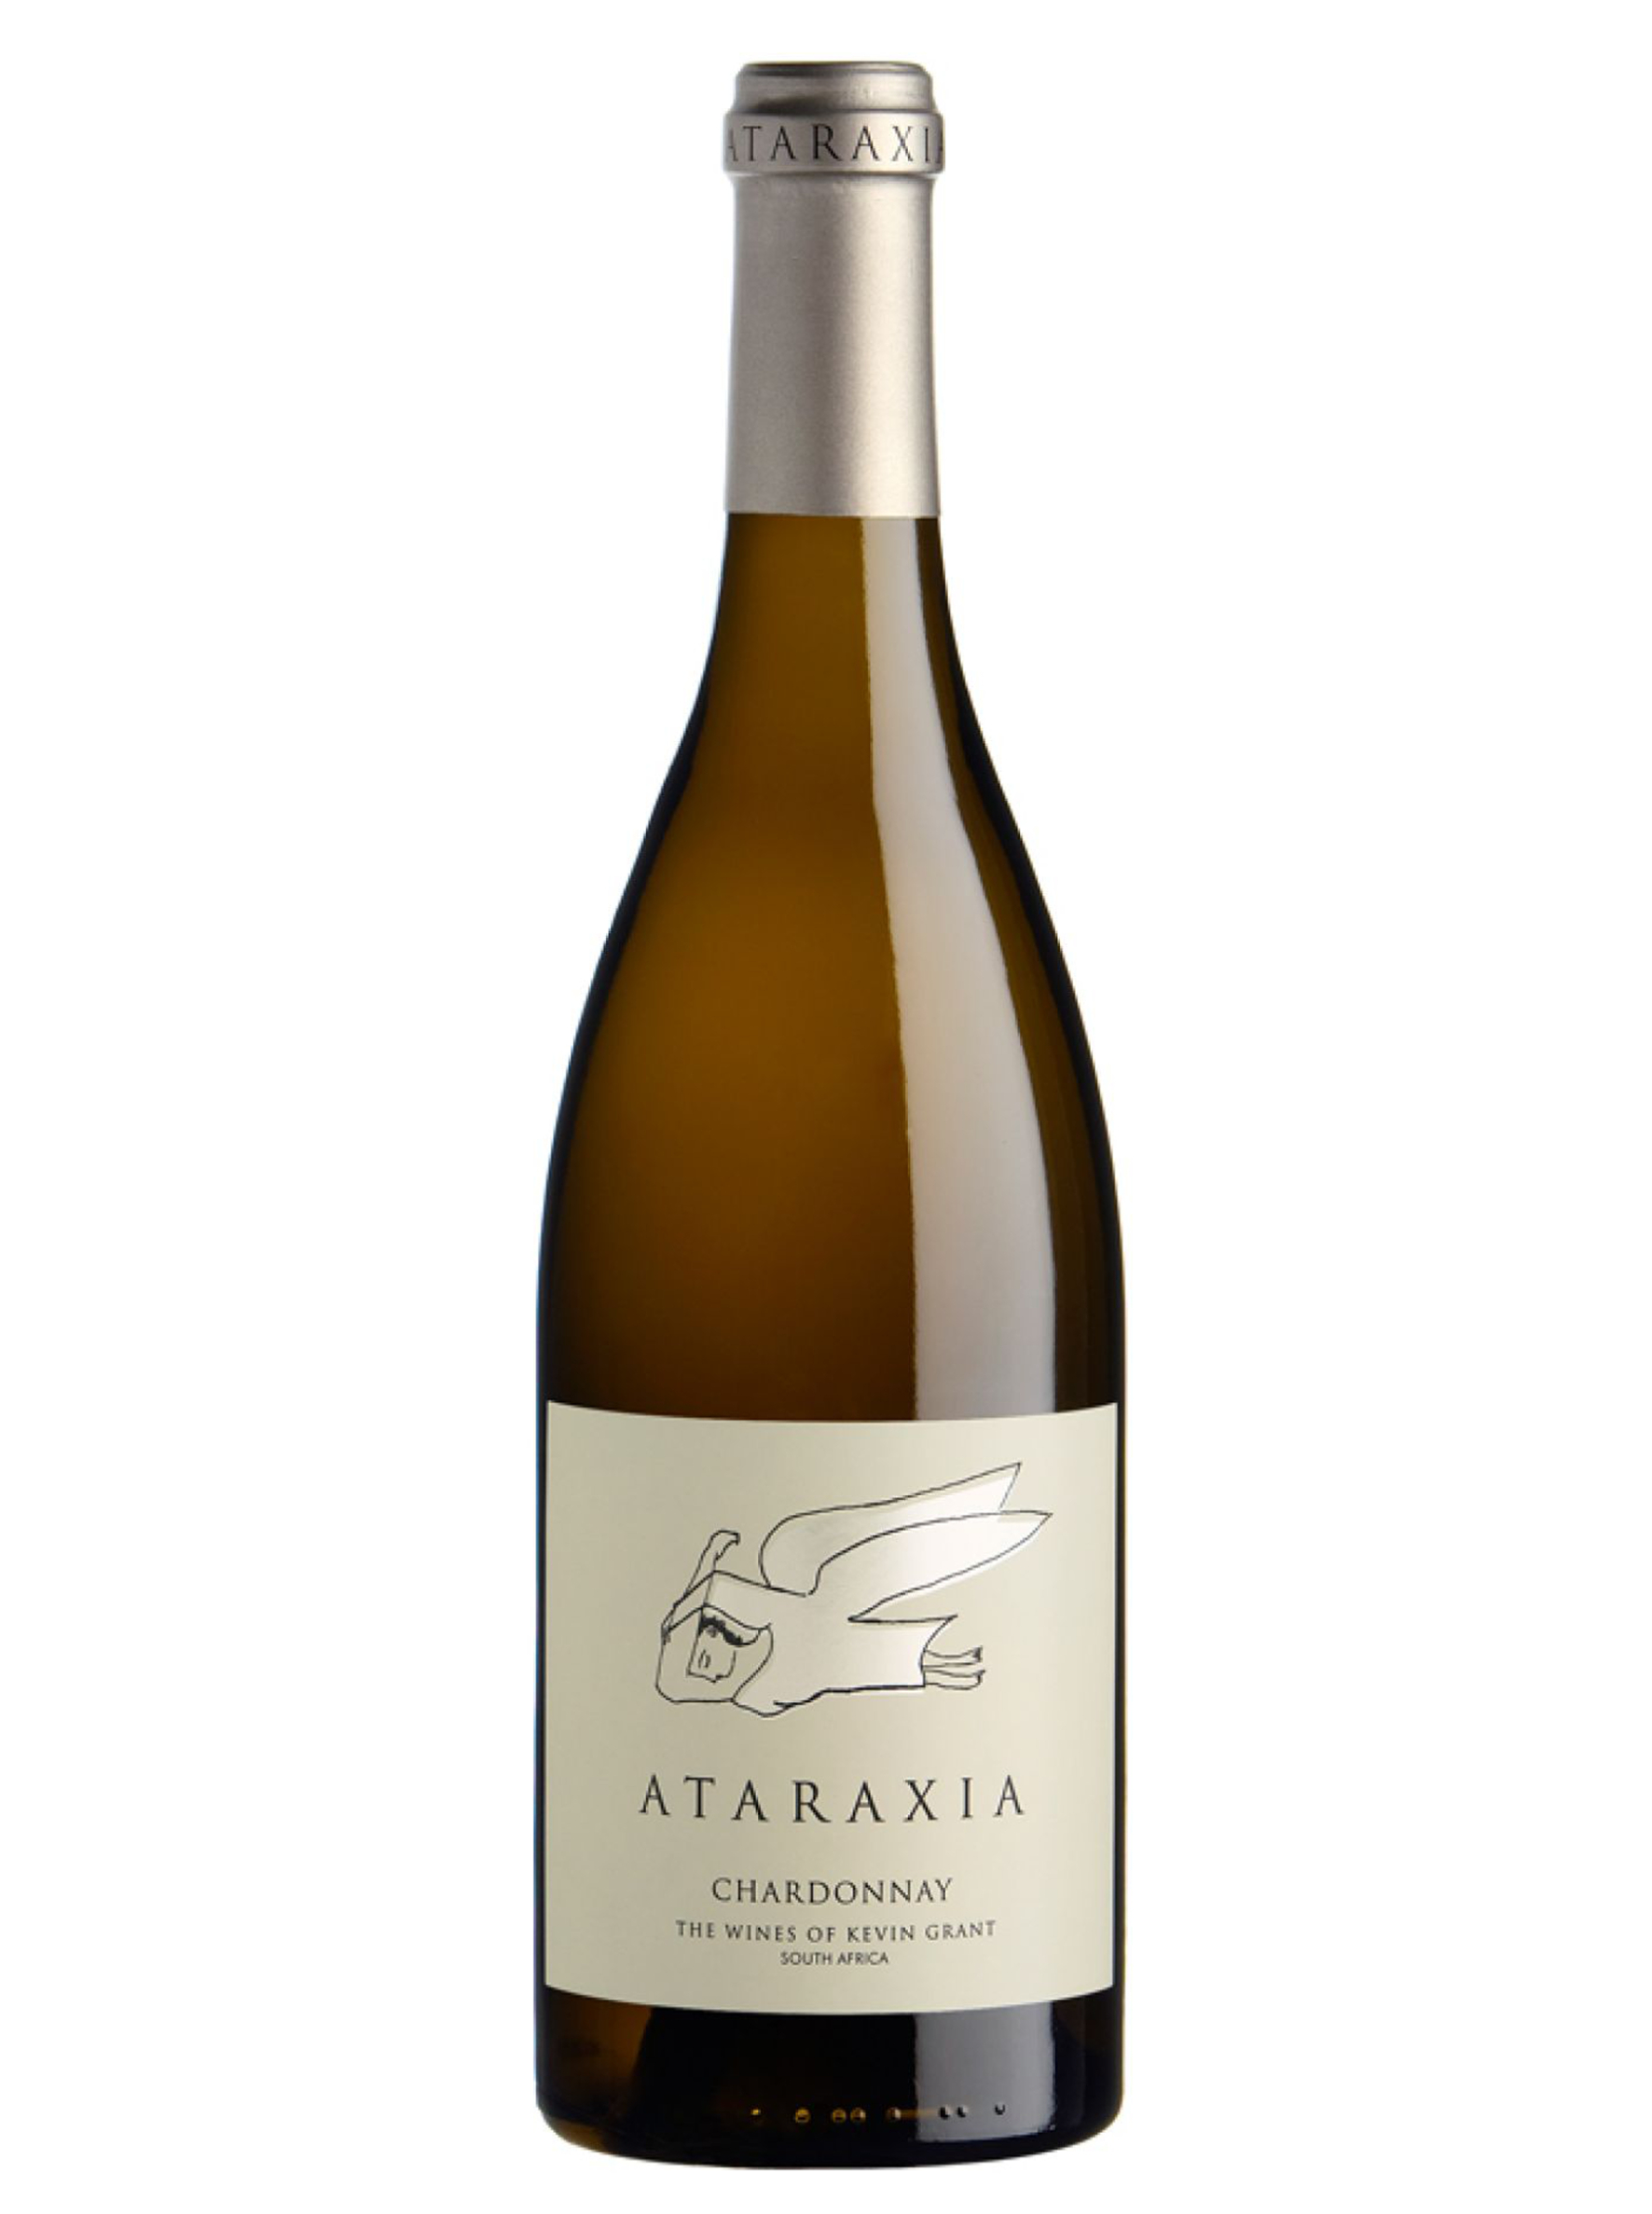 Ataraxtia Chardonnay 2015